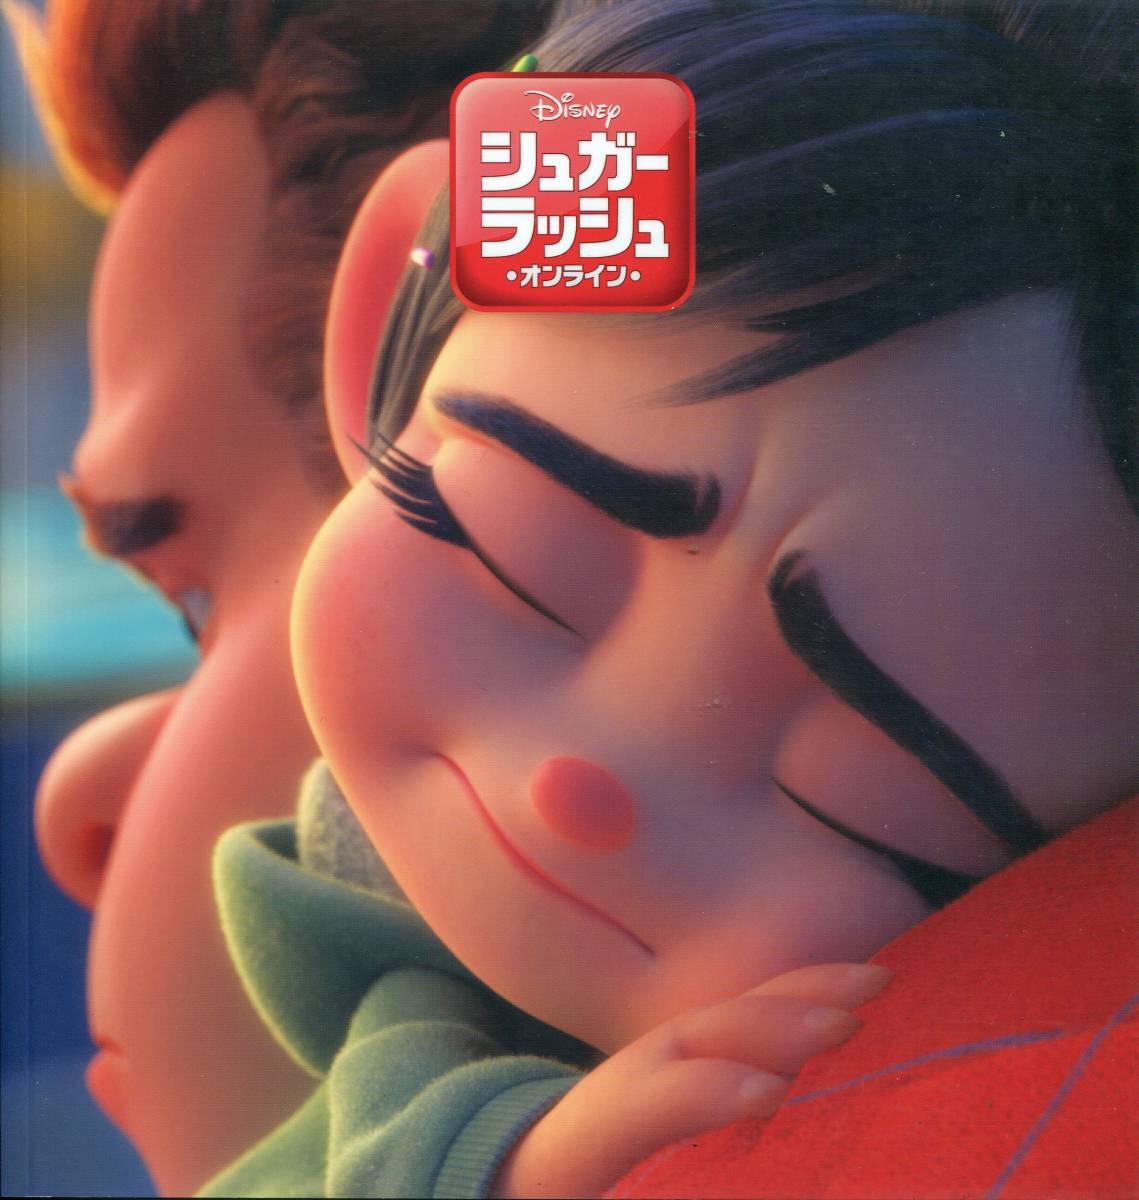 shuga-* Rush online брошюра & рекламная листовка * Disney произведение фильм shuga- Rush проспект Flyer комплект *aoaoya